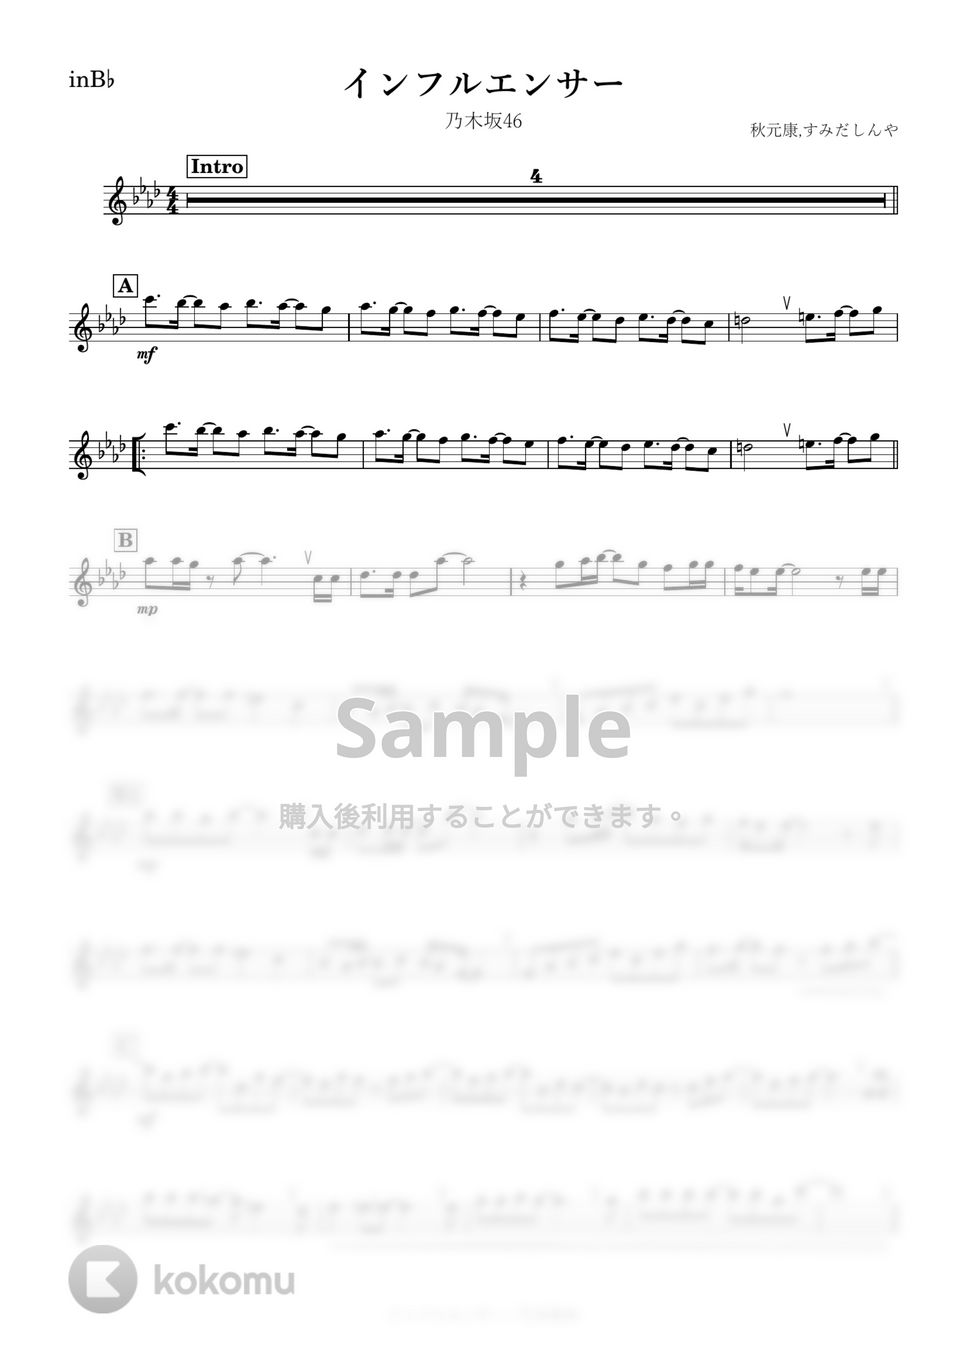 乃木坂46 - インフルエンサー (B♭) by kanamusic